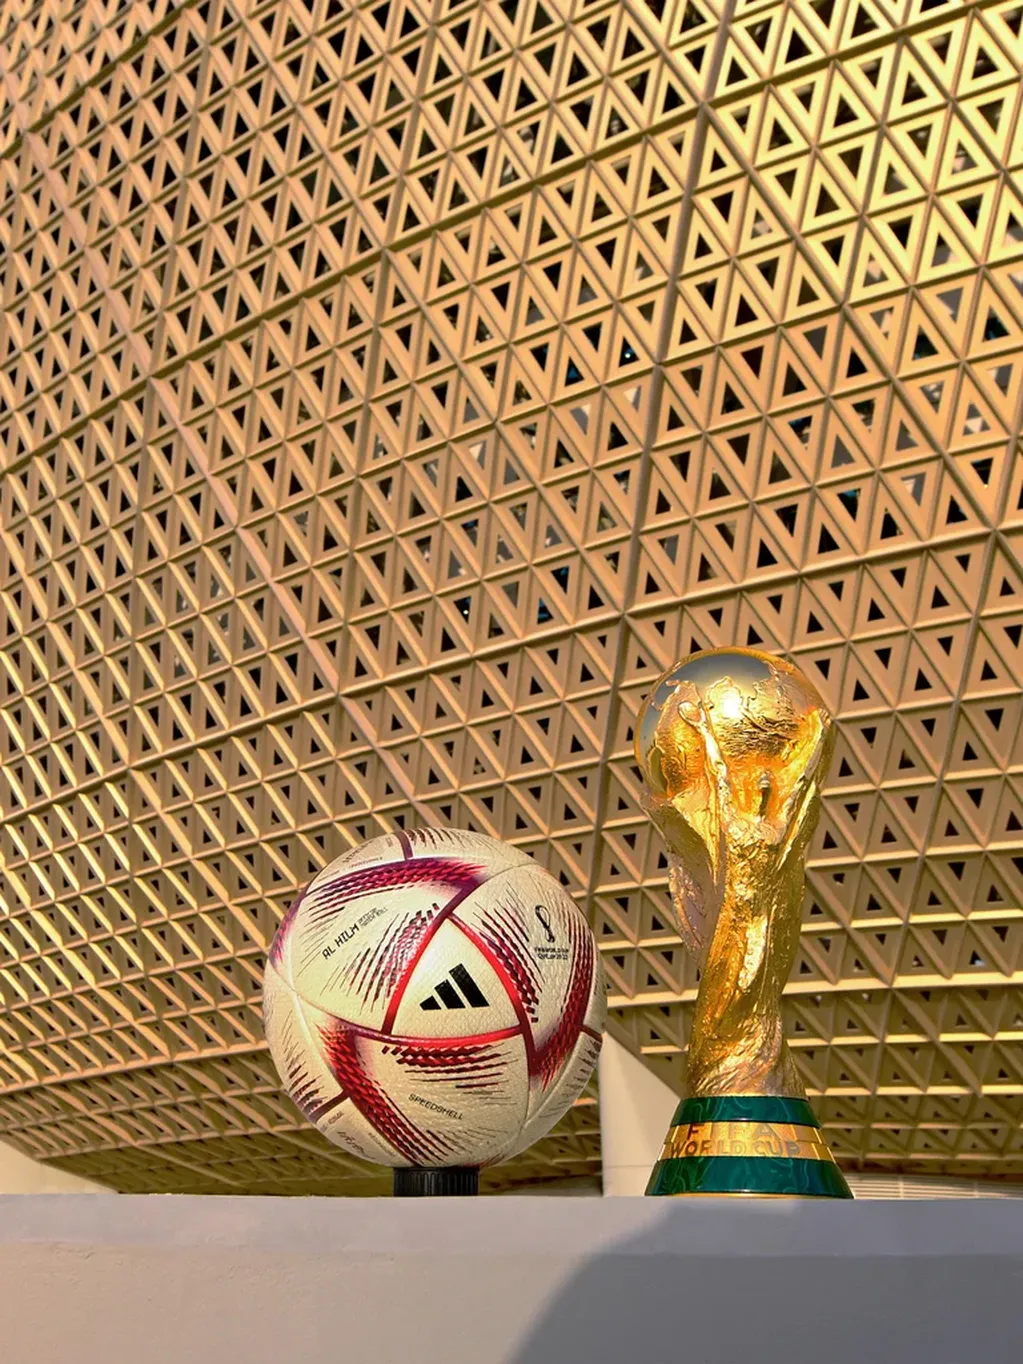 Dos argentinos lograron quedarse con la pelota de la final del Mundial de Qatar.